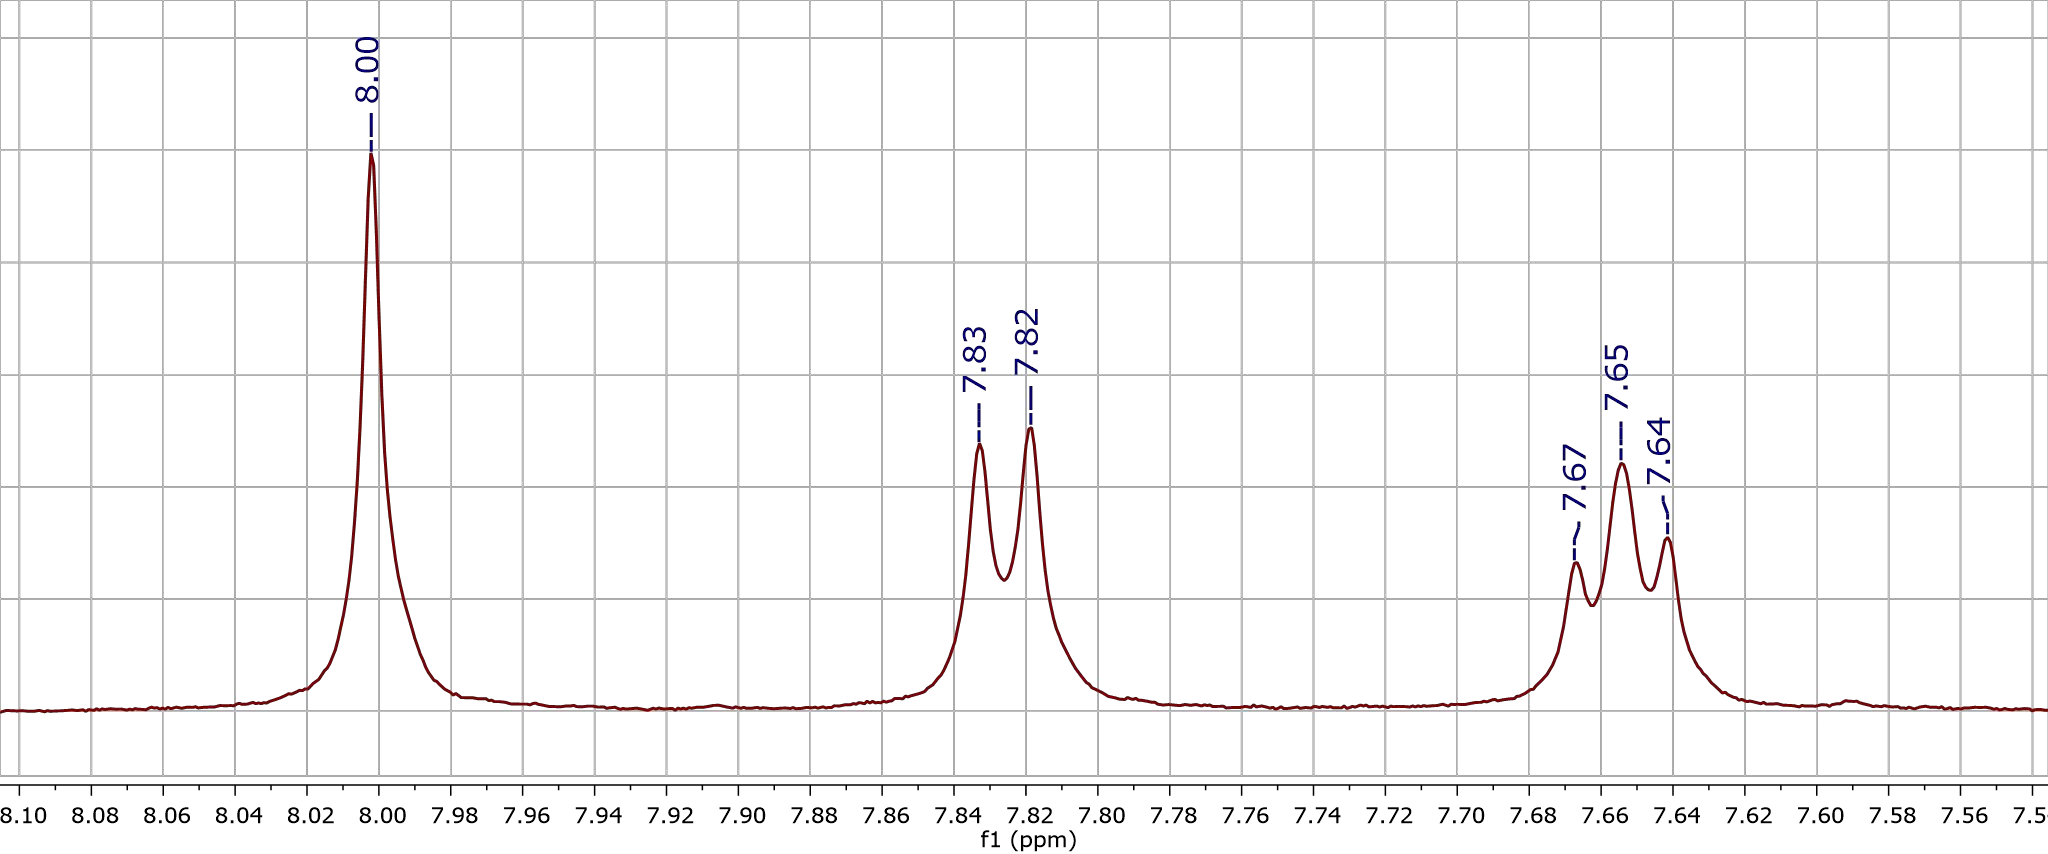 Сигналы в спектре 1Н с различным количеством линий